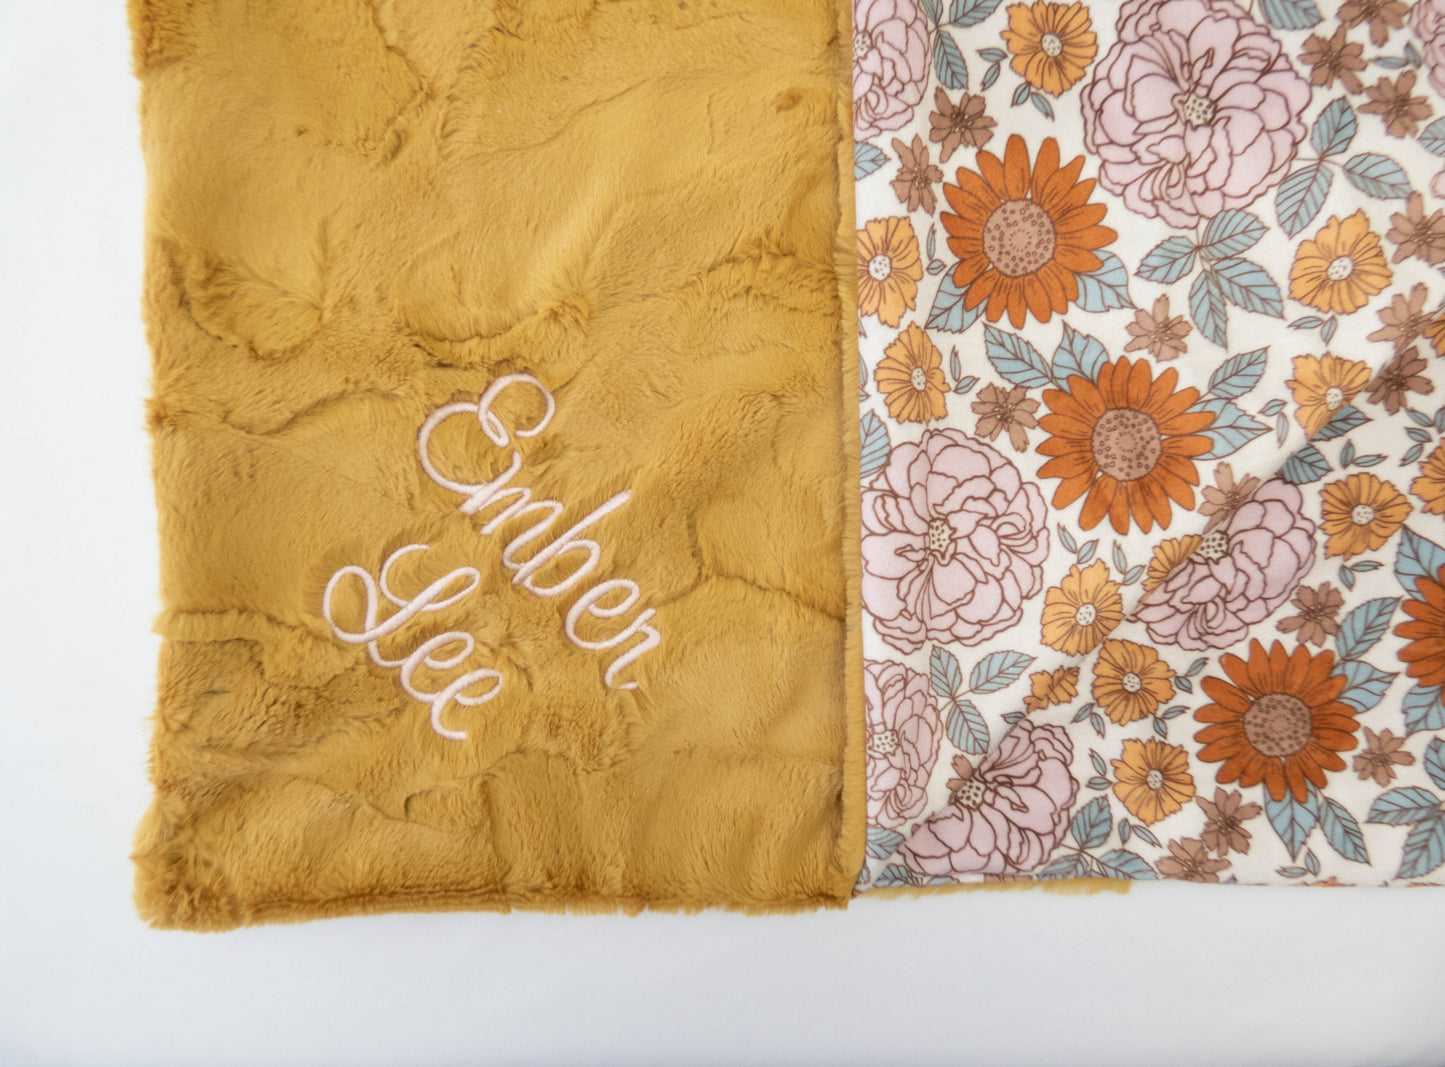 Golden Girl Vintage Floral Baby Blanket